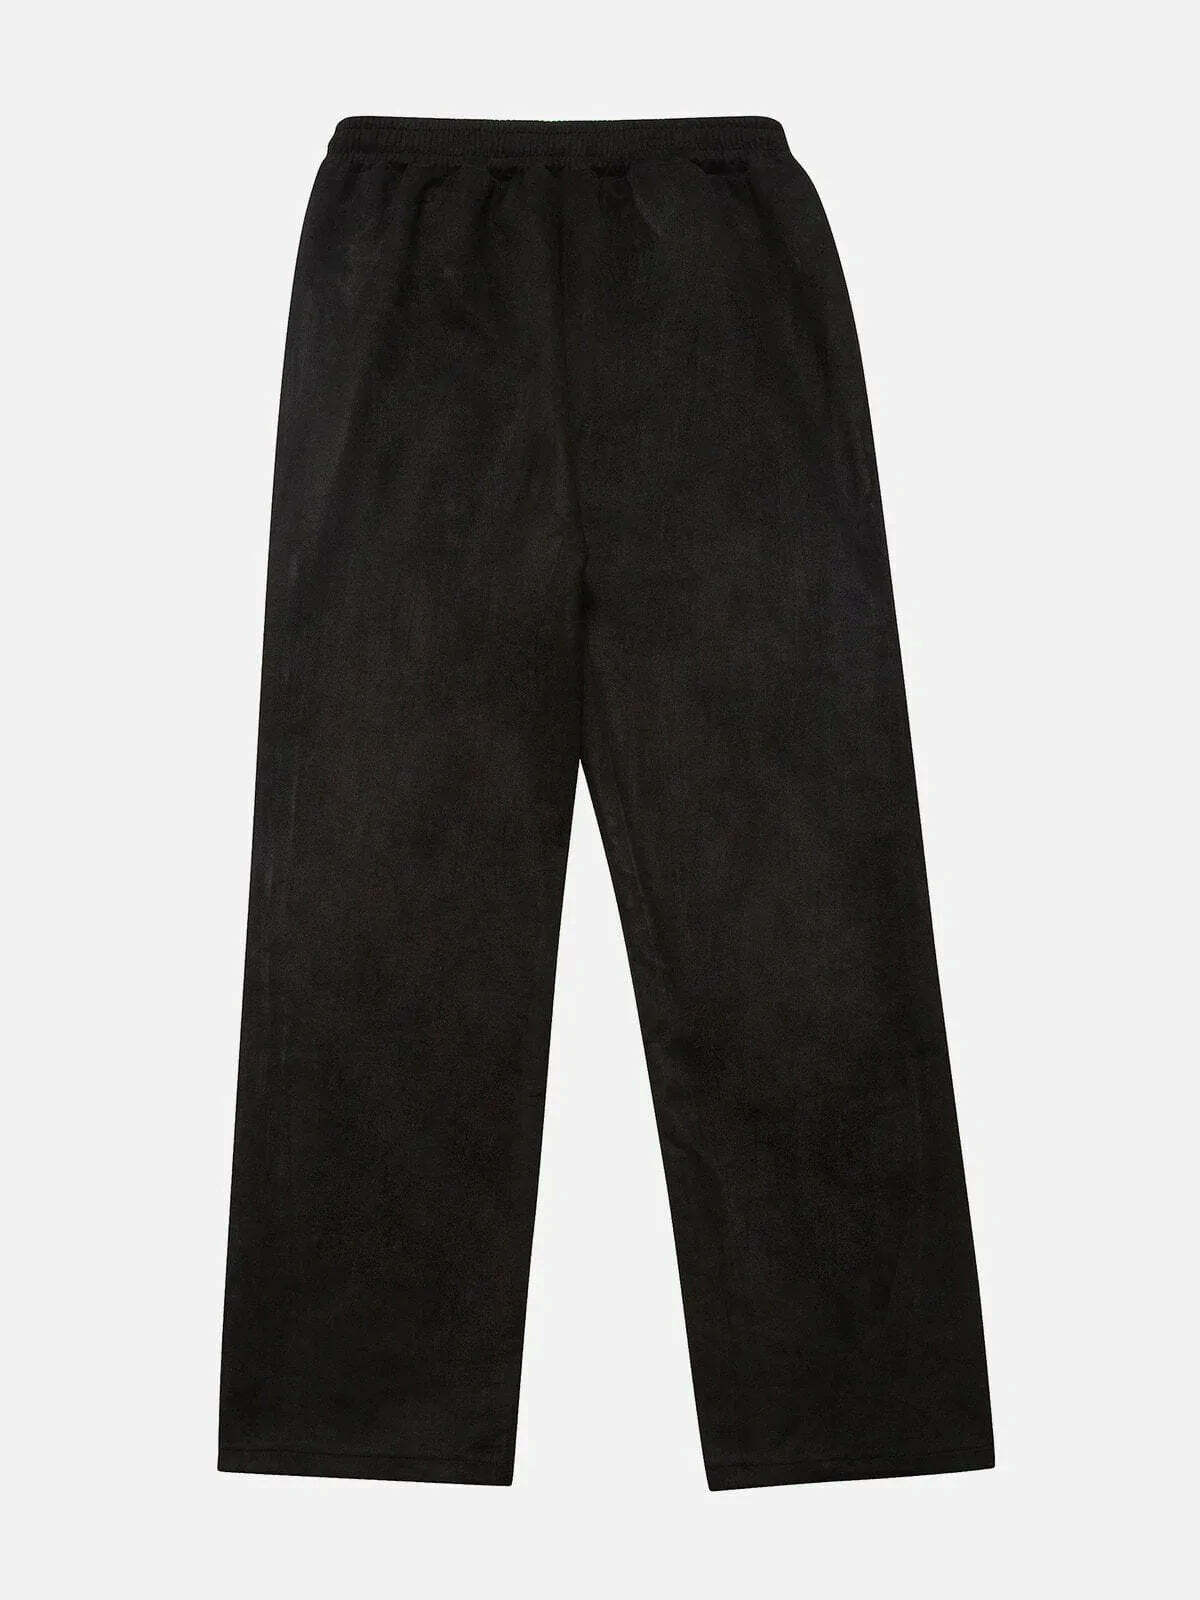 suede side zip sweatpants edgy & stylish streetwear 3633